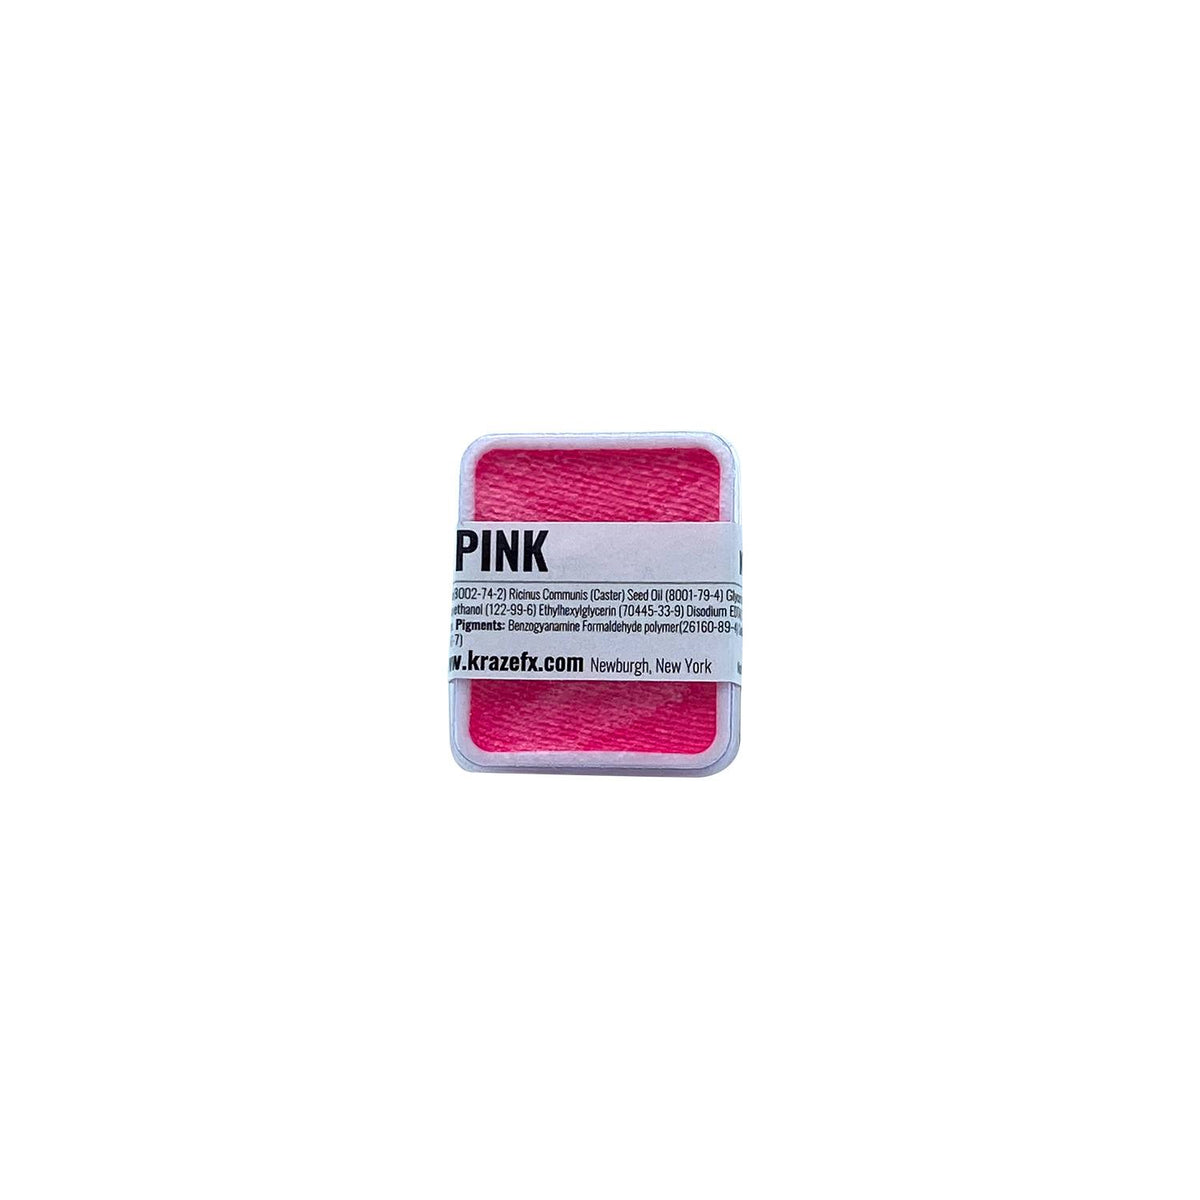 Kraze FX Face Paint Palette Refill - Neon Pink (0.21 oz/6 gm)